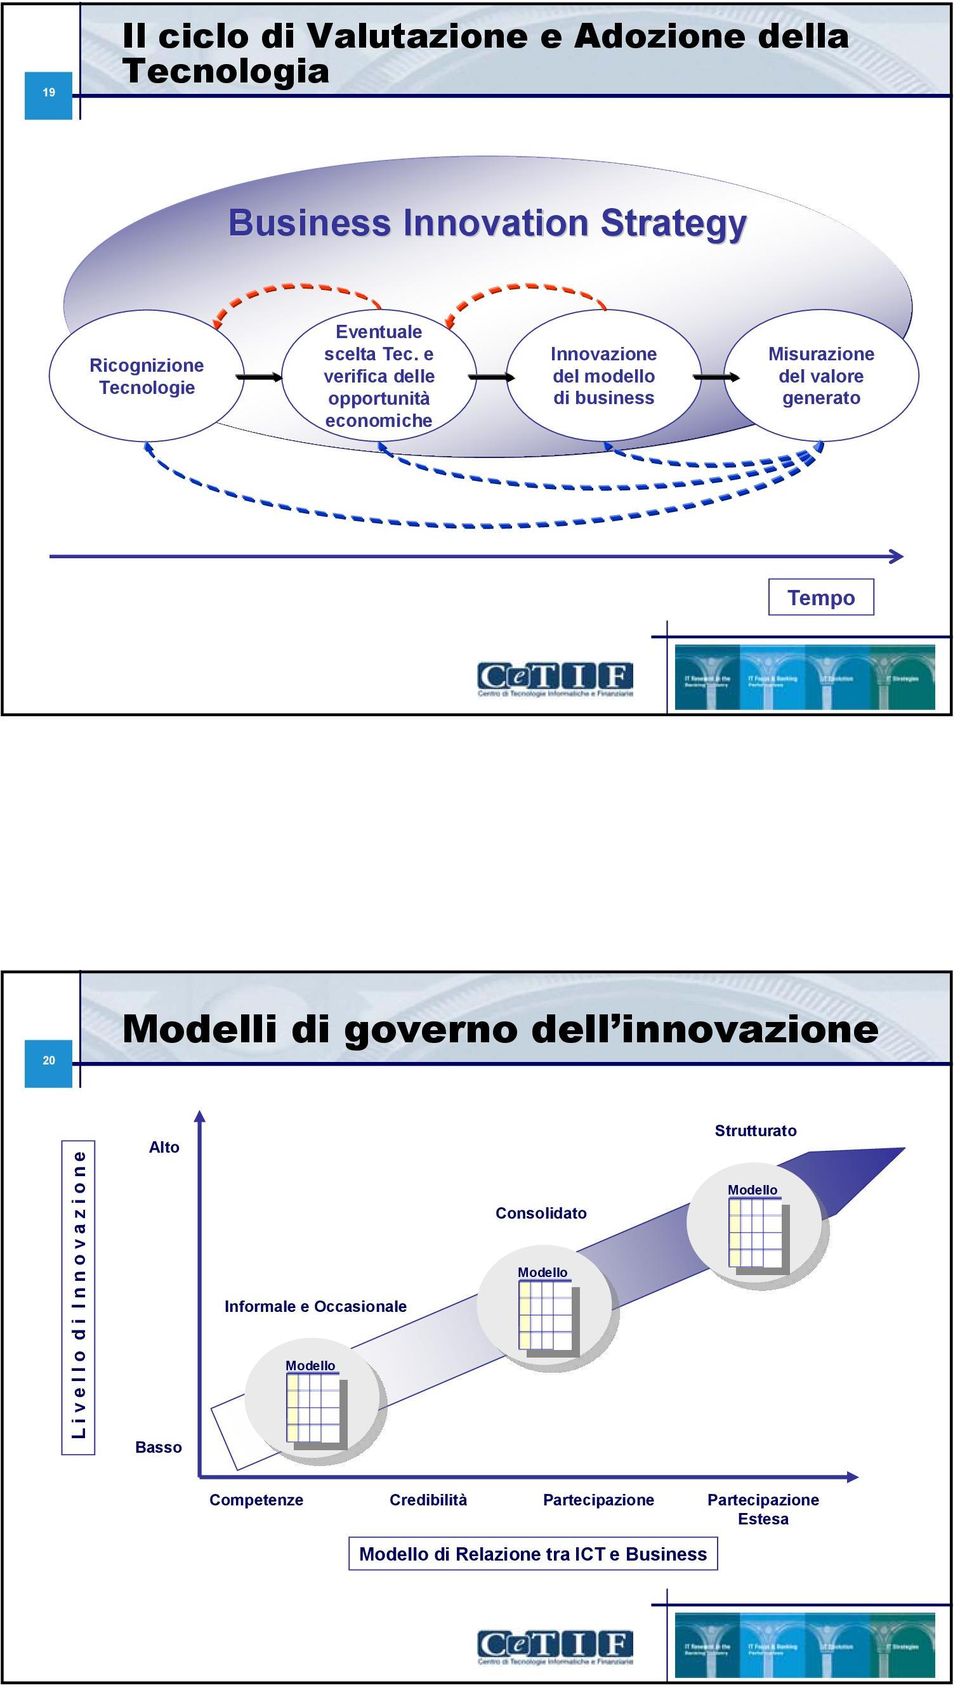 Modelli di governo dell innovazione L i v e l l o d i I n n o v a z i o n e Alto Basso Informale e Occasionale Modello